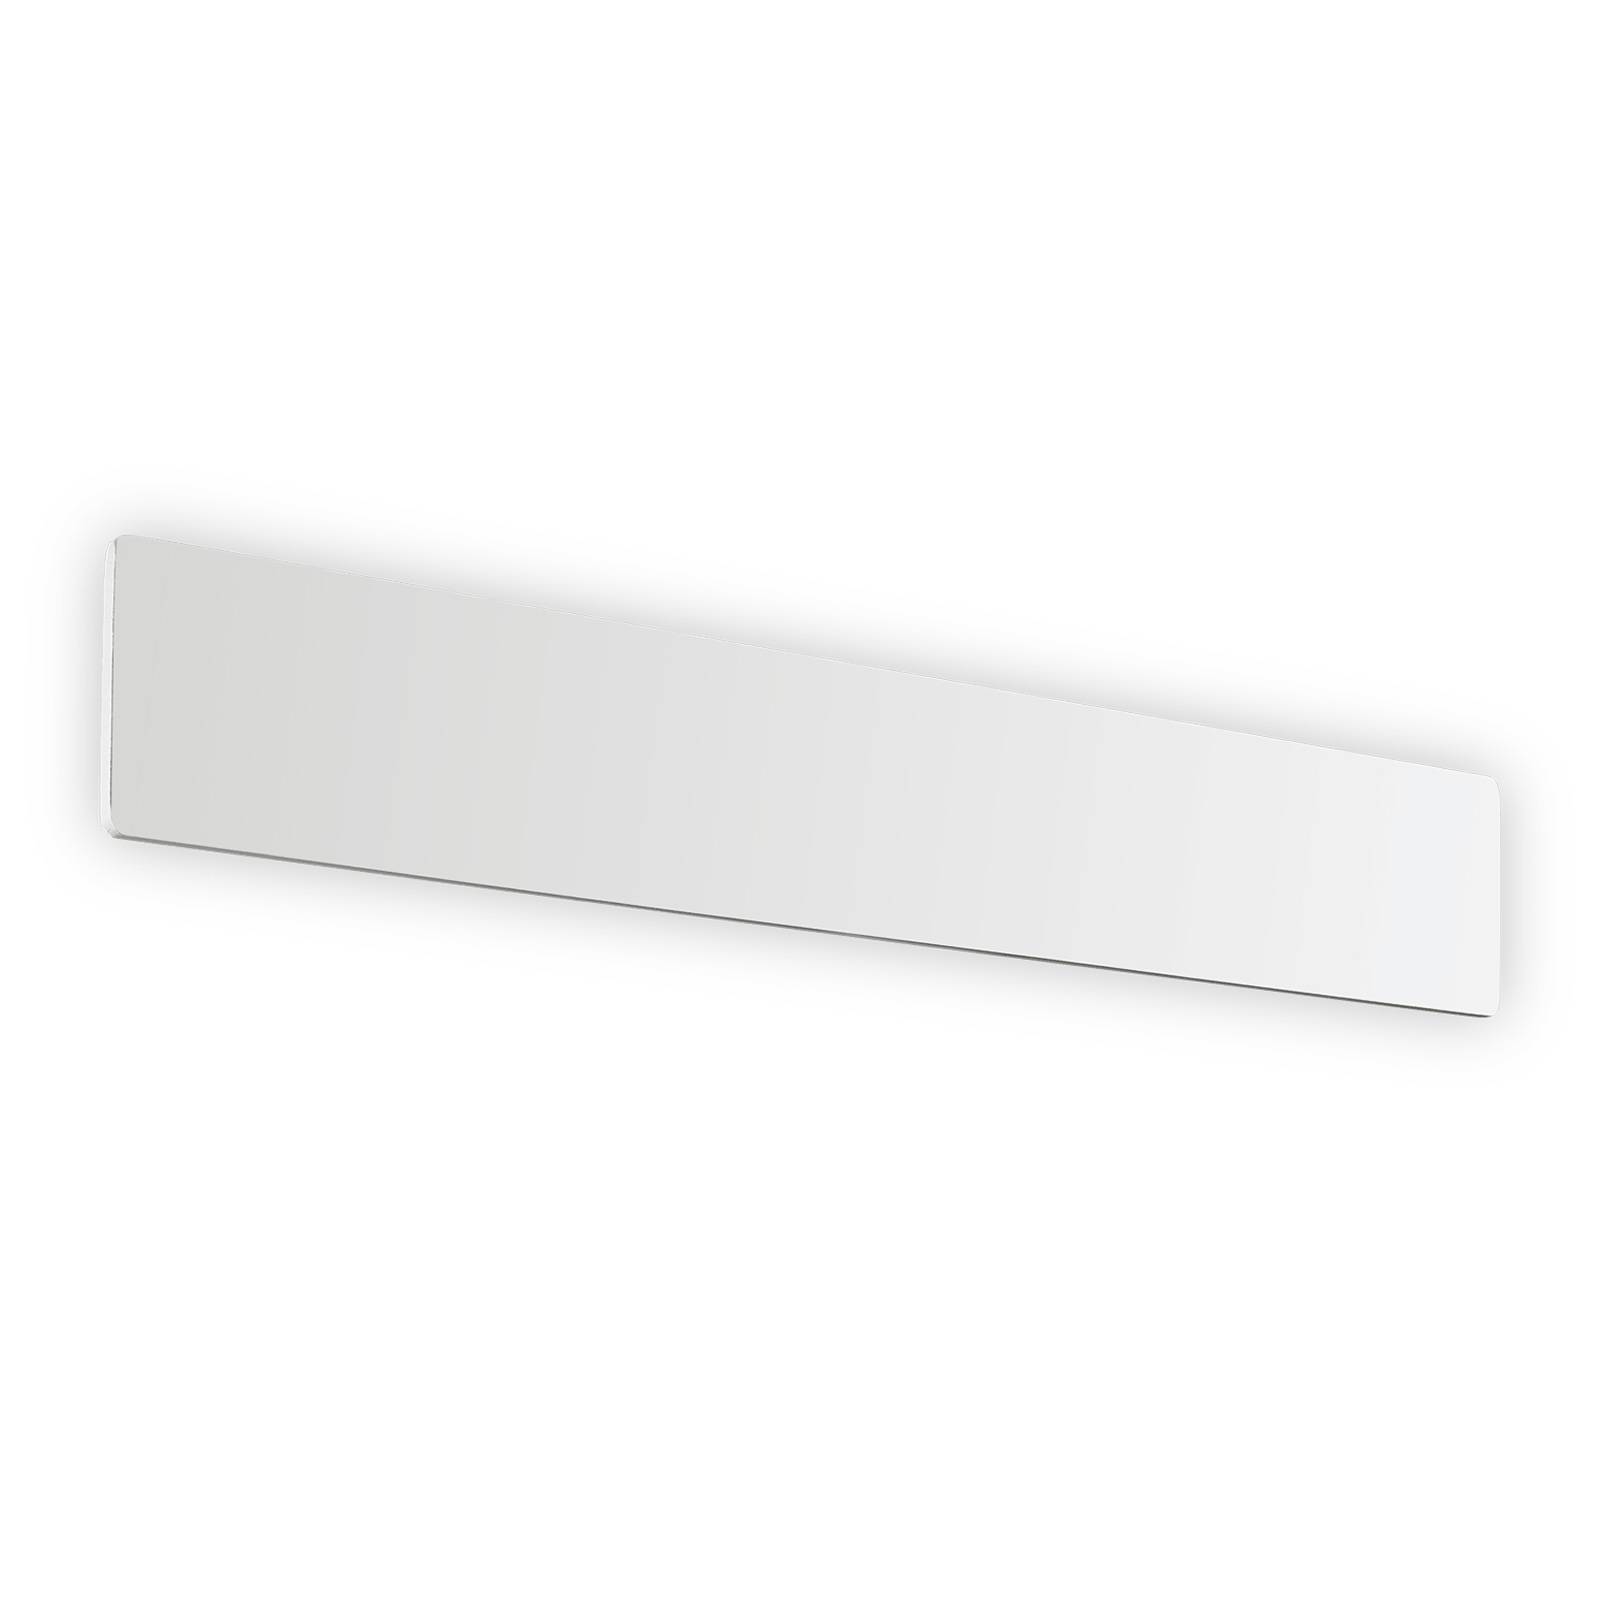 Ideallux LED-Wandleuchte Zig Zag weiß, Breite 53 cm